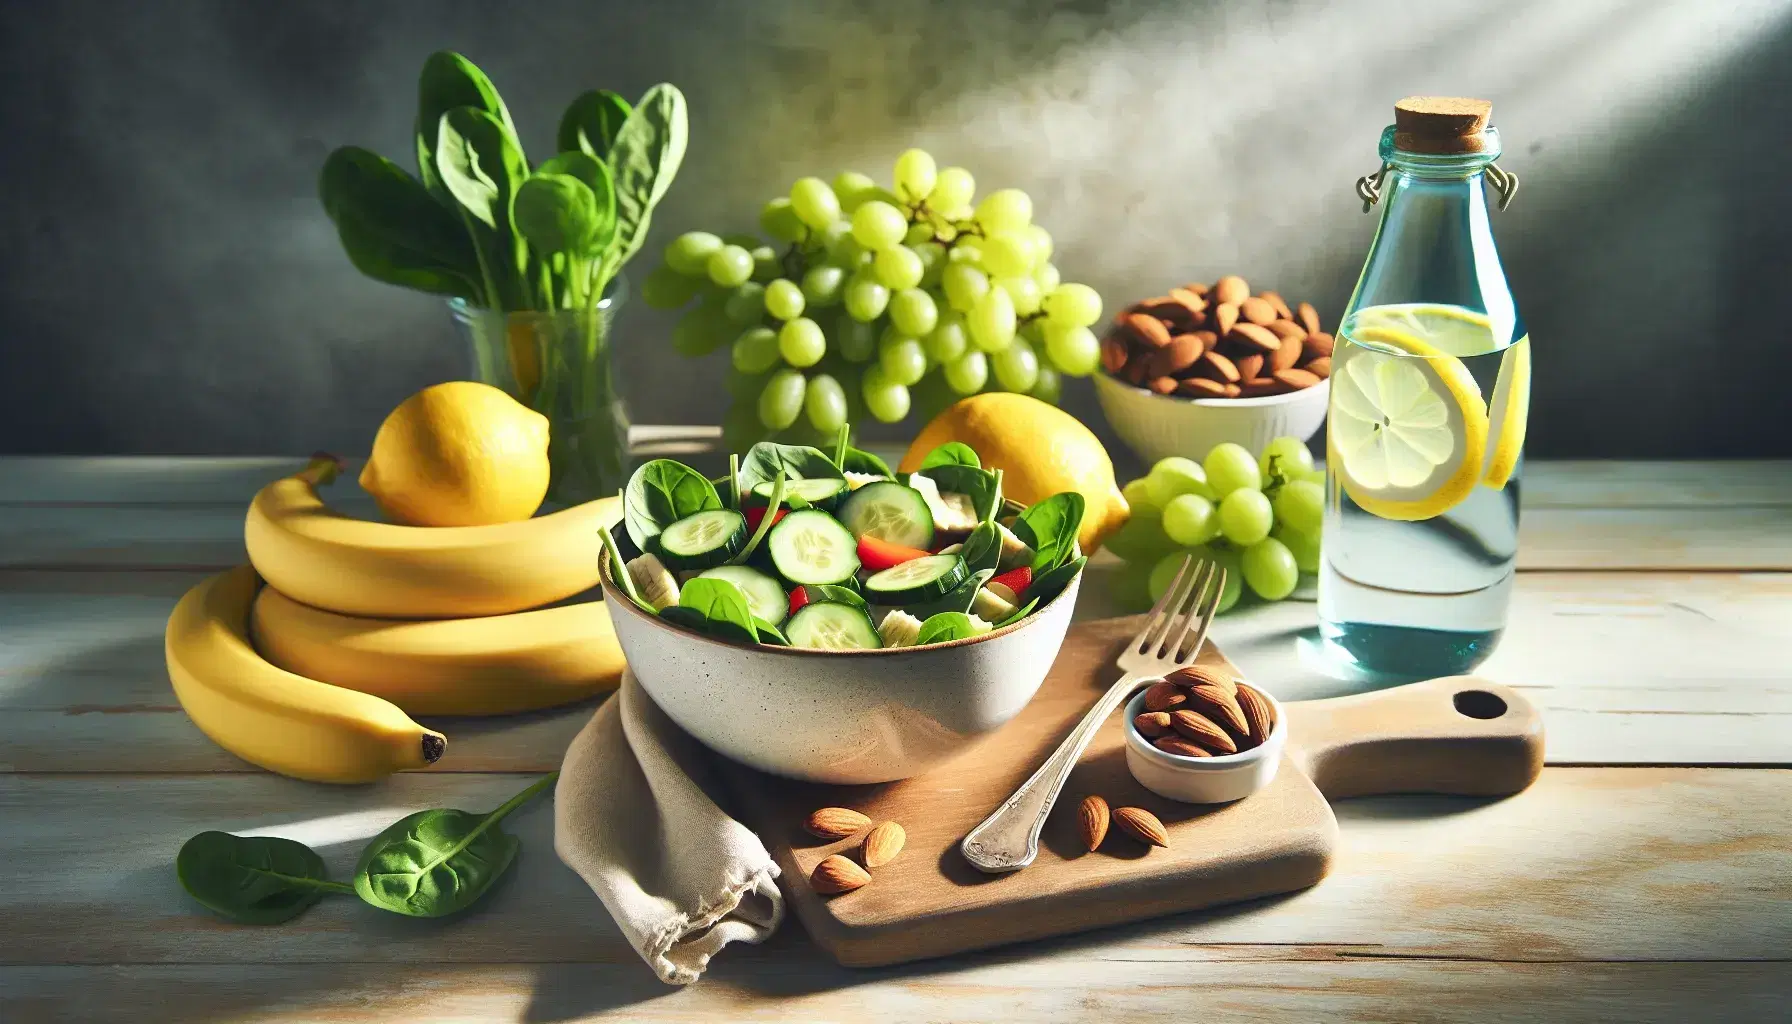 Mesa de madera clara con alimentos saludables para síndrome de intestino irritable, incluyendo ensalada verde, agua con limón, plátanos, uvas verdes y almendras.